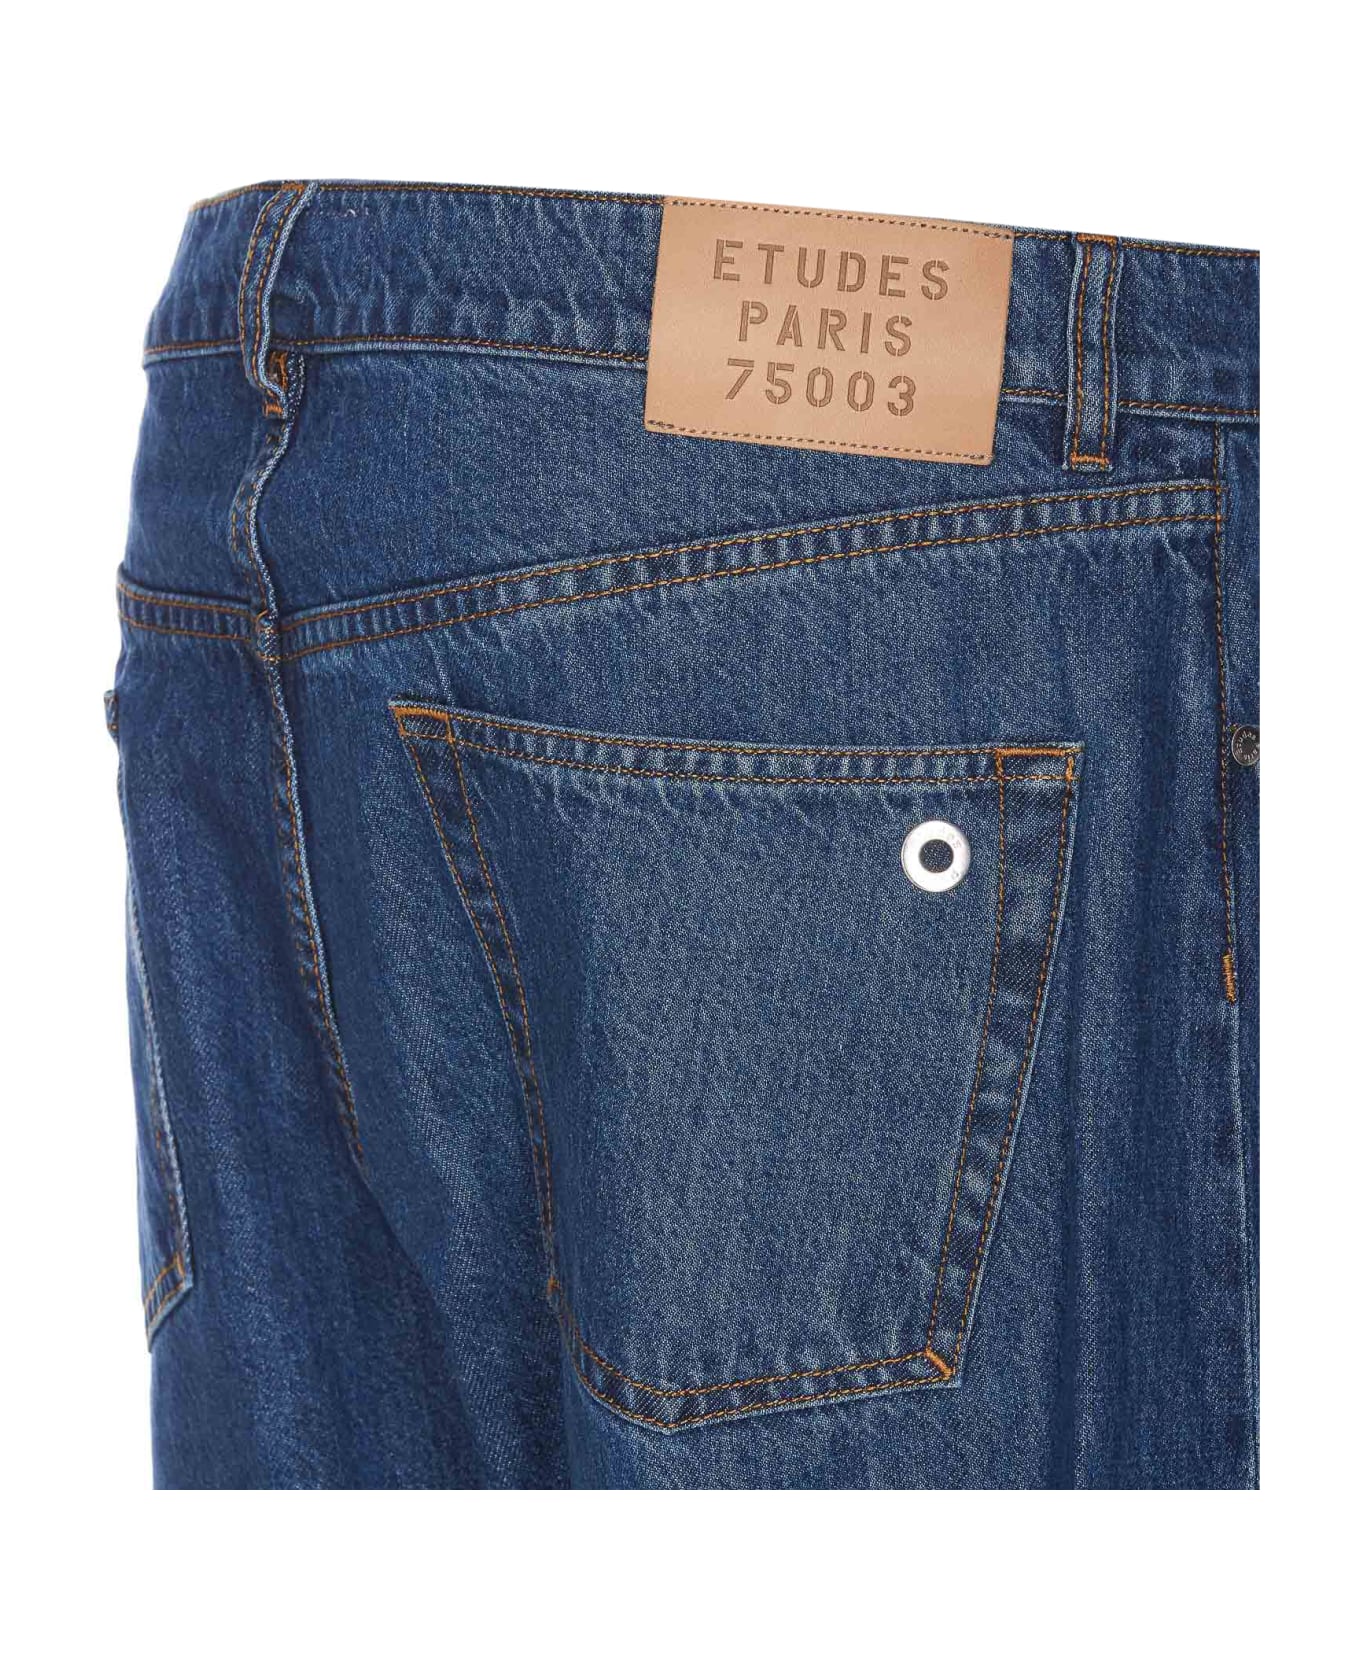 Études Surface Denim Jeans - Blue